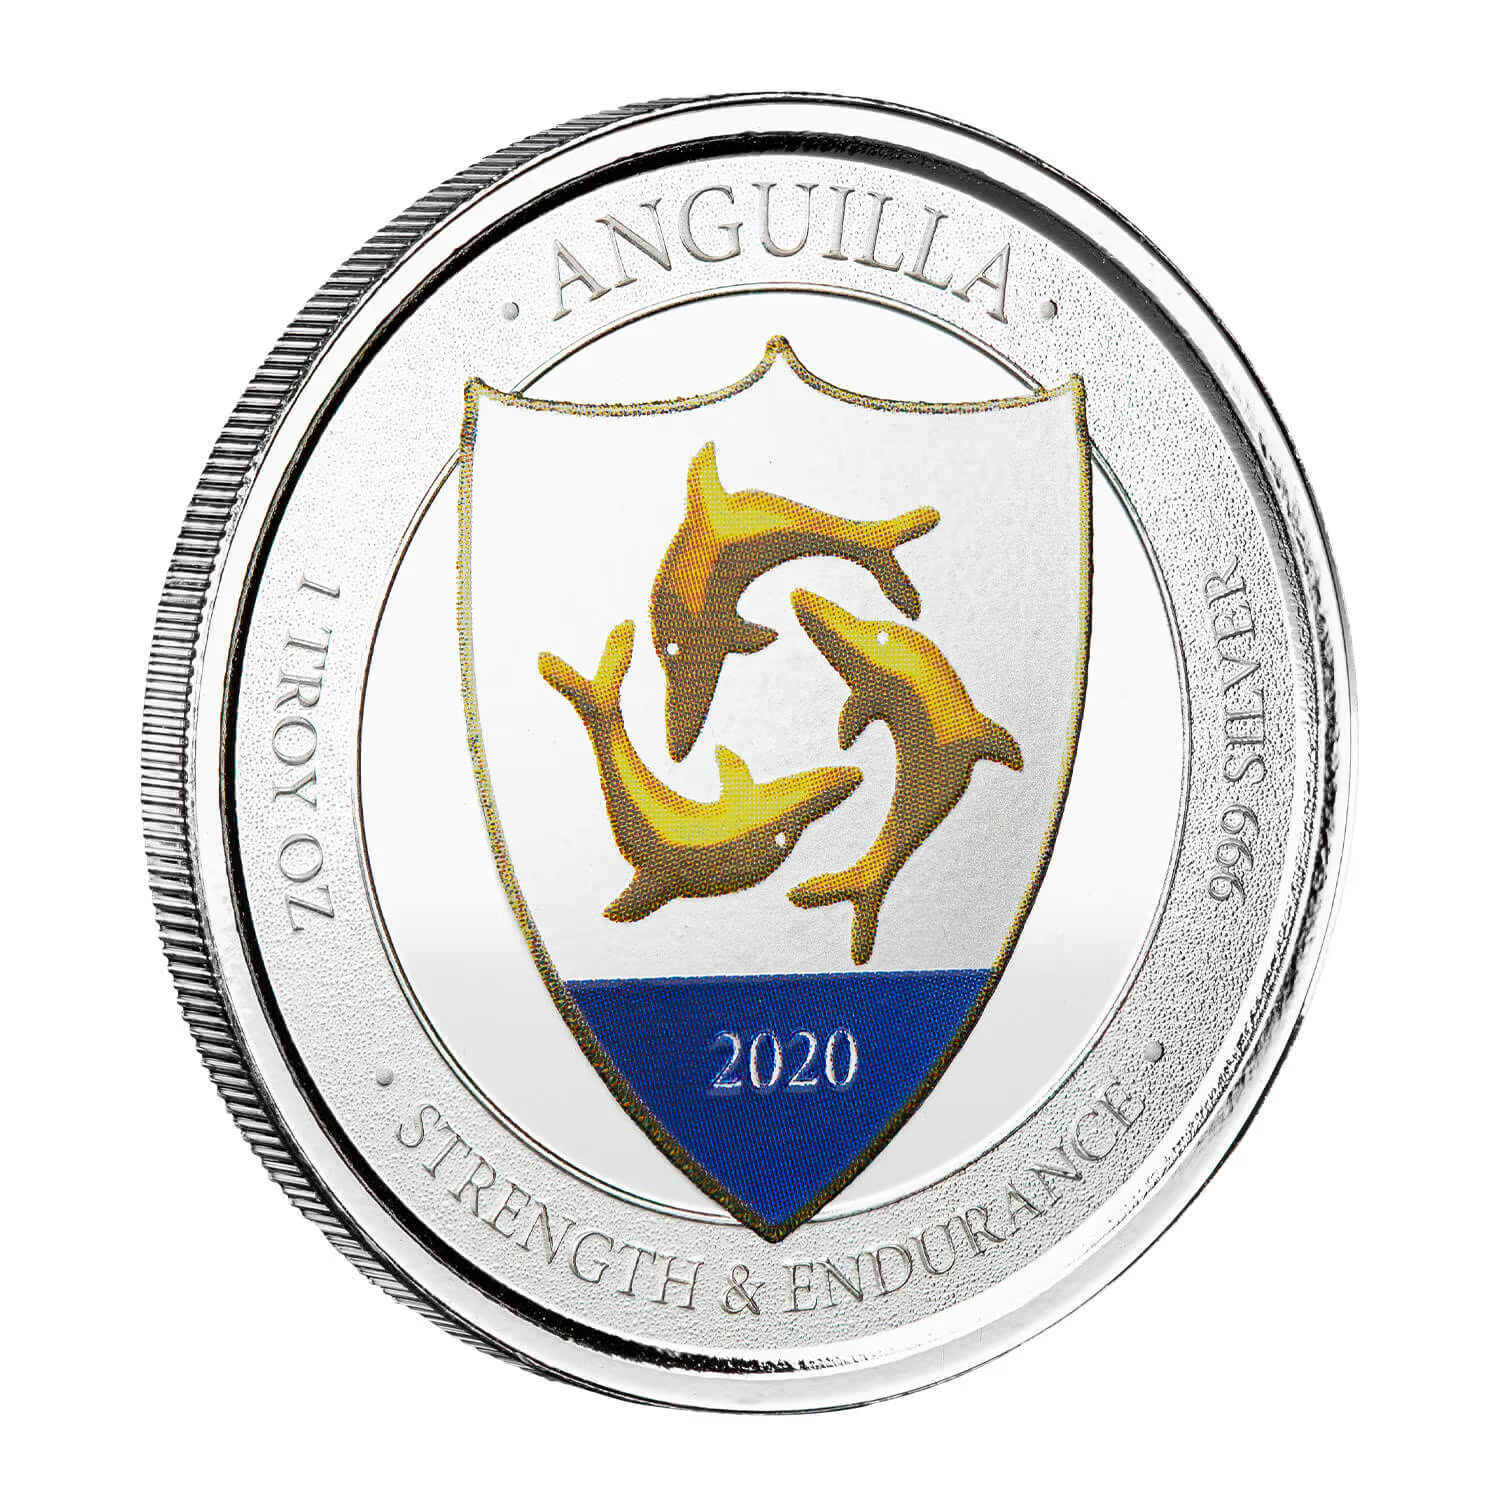 1 Oz Silver Coin 2020 EC8 Anguilla $2 Scottsdale Mint Color Proof - Coat of Arms-classypw.com-1